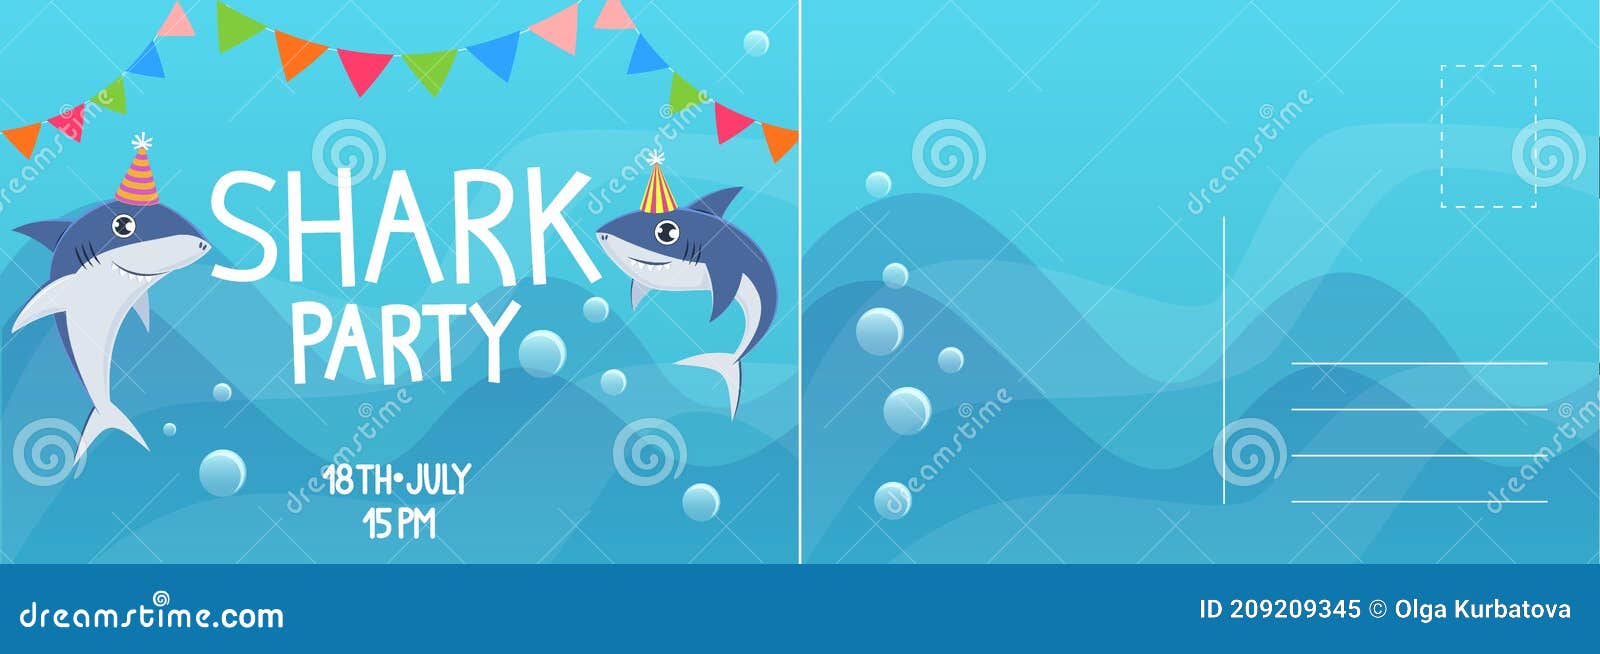 birthday party invitation baby shark TARJETA DE INVITACION